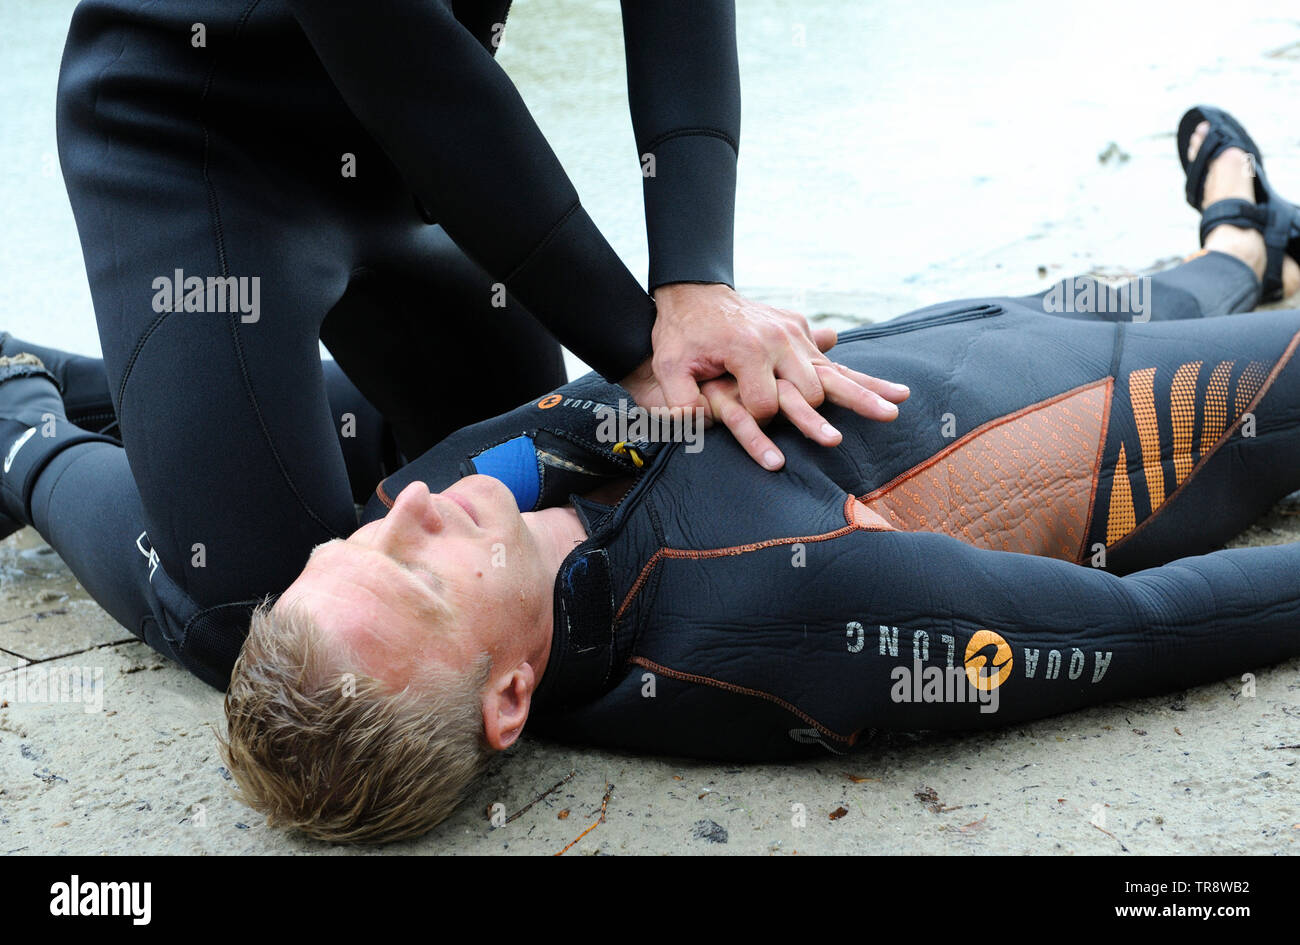 Leçon de la respiration artificielle. Lifeguard agissant sur une poitrine de la noyade par des mains.Le 10 août 2018. Kiev, Ukraine Banque D'Images